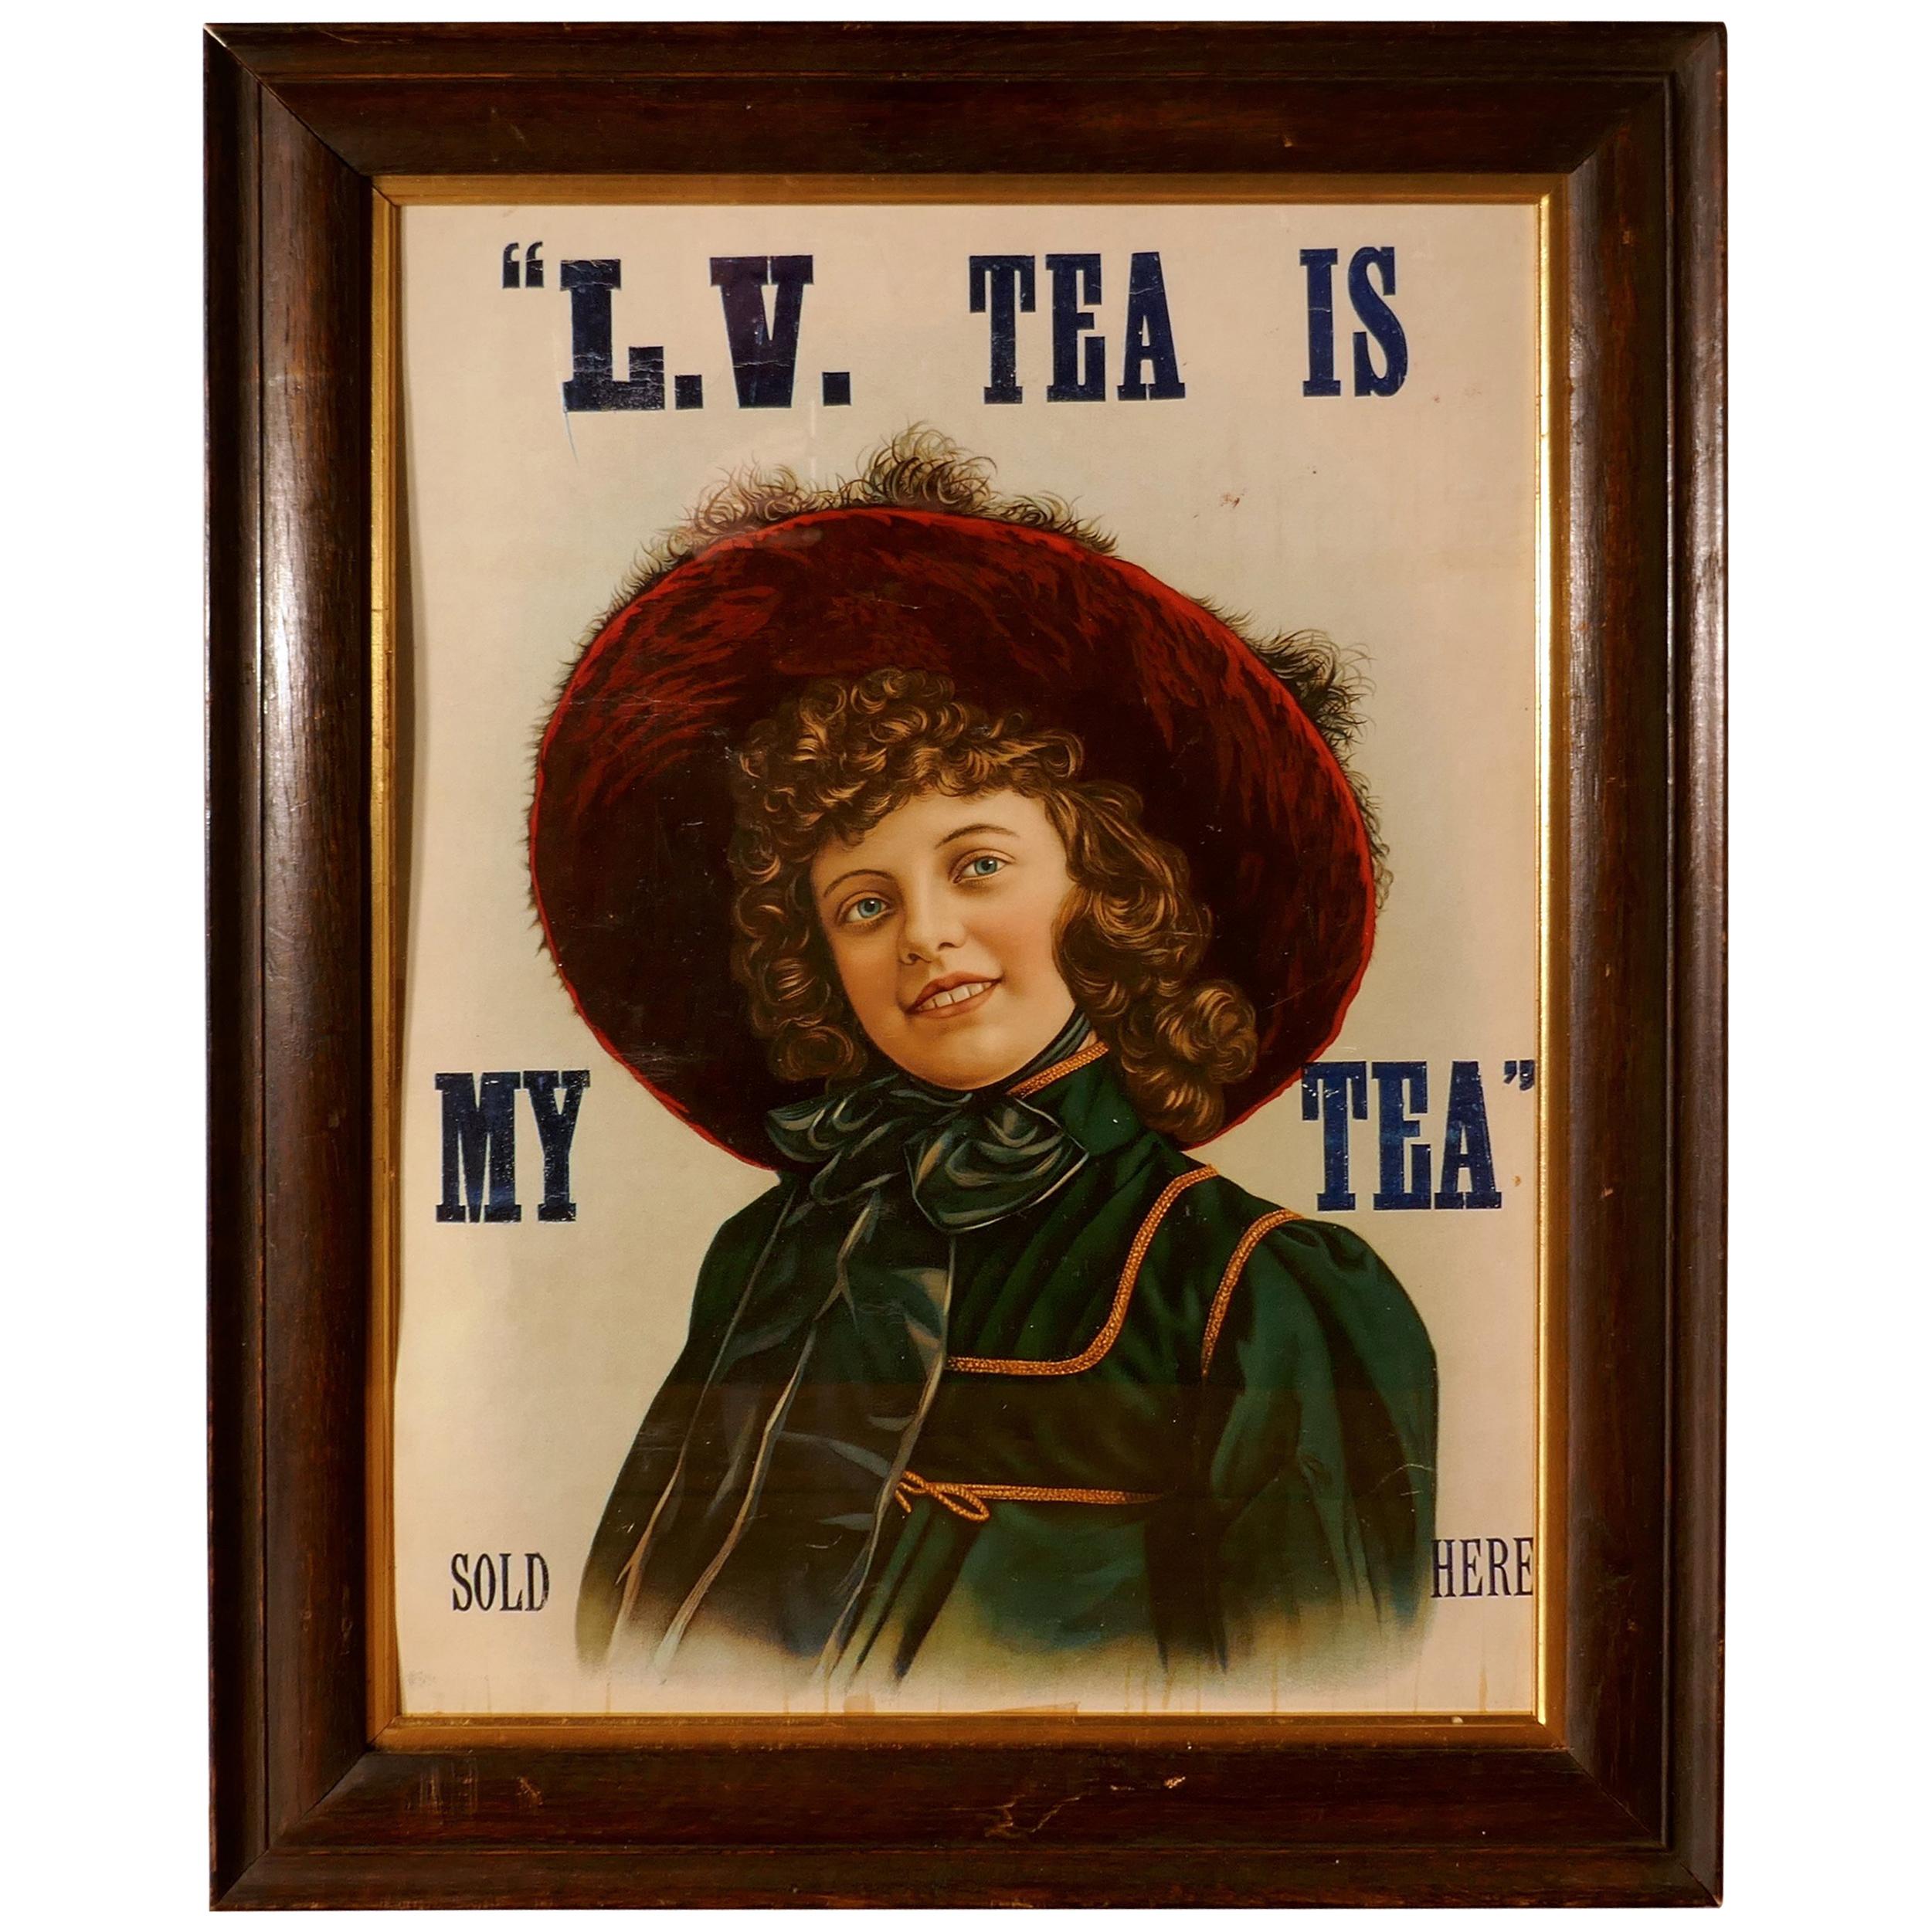 Original Edwardian Framed Tea Advertising Card Poster, “L.V. TEA IS MY TEA” Sold